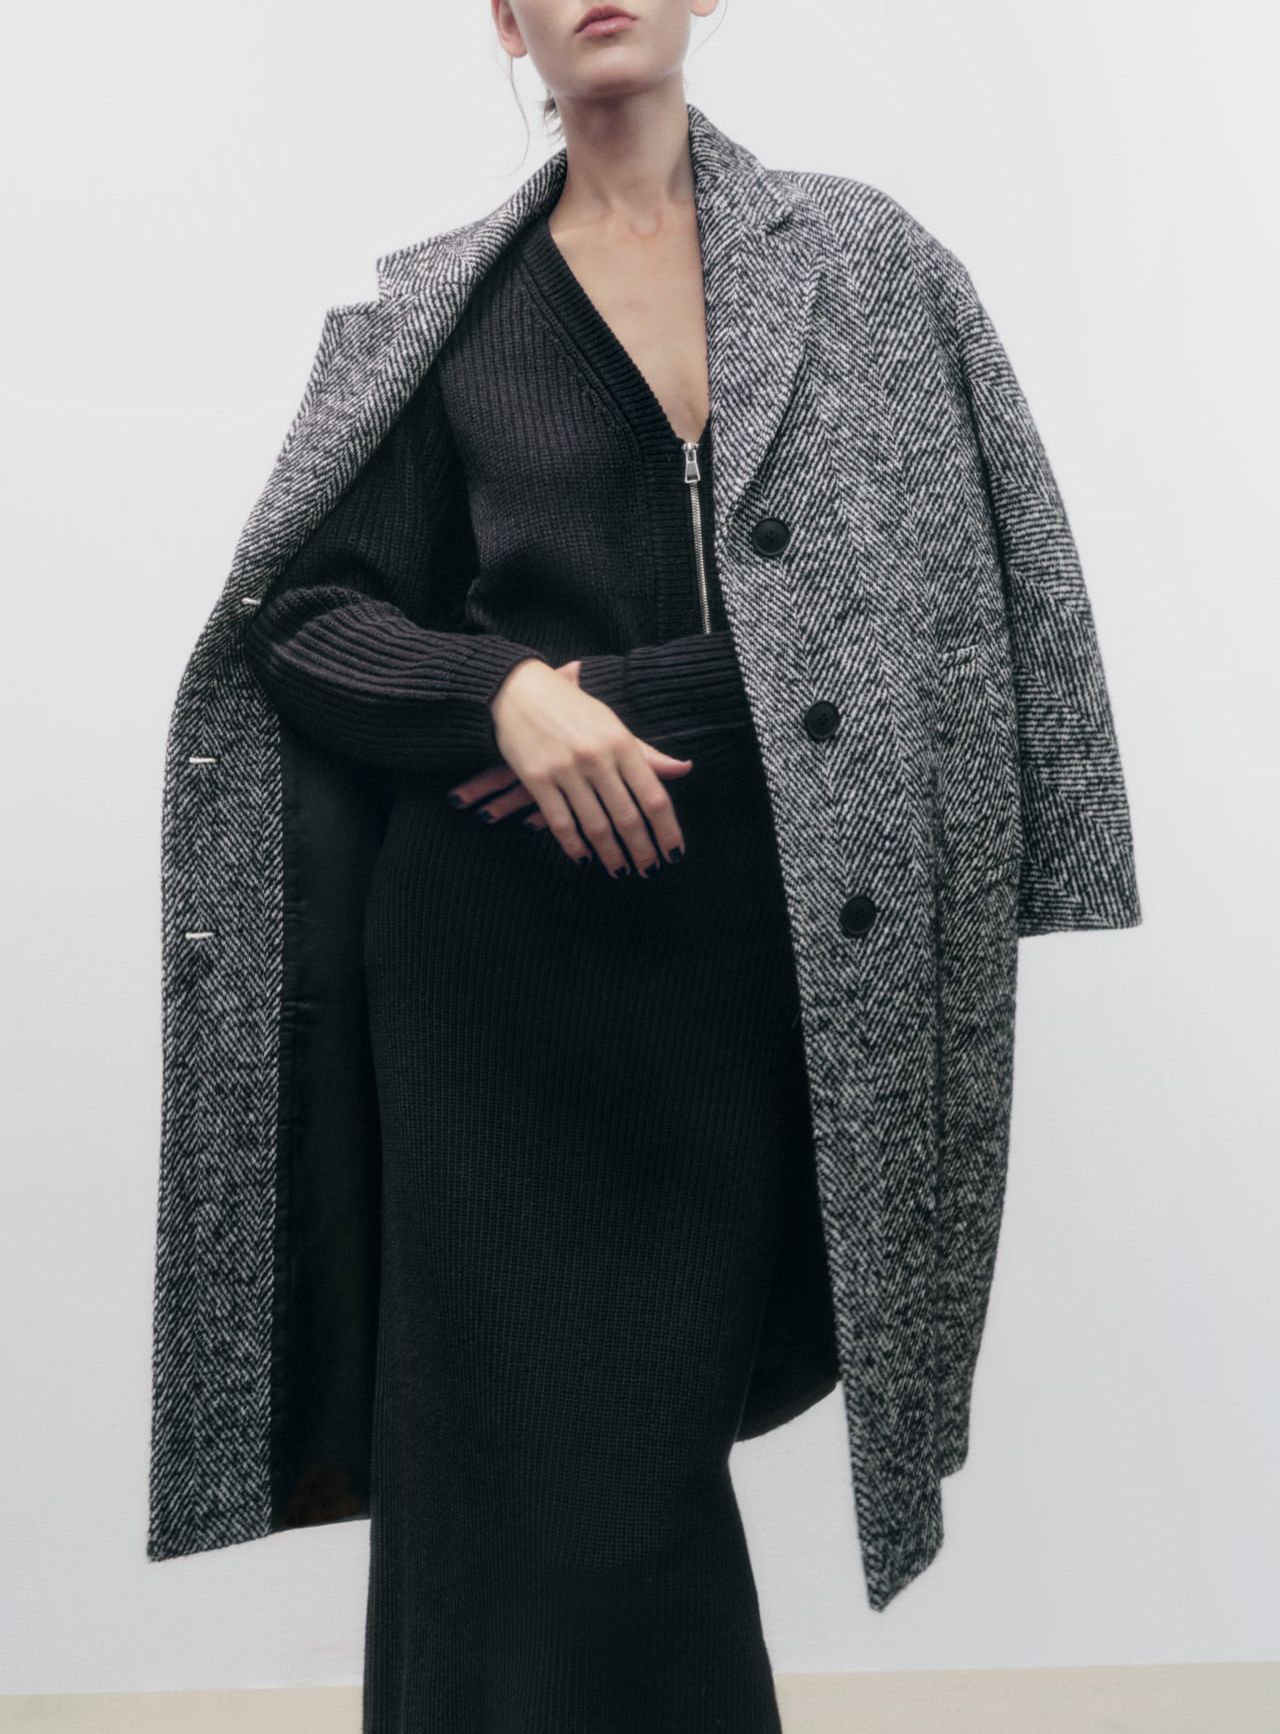 Пальто Zara, Зима, размер 46, цвет серый, Шерсть, Полиамид - купить повыгодной цене в интернет-магазине OZON (1145583224)